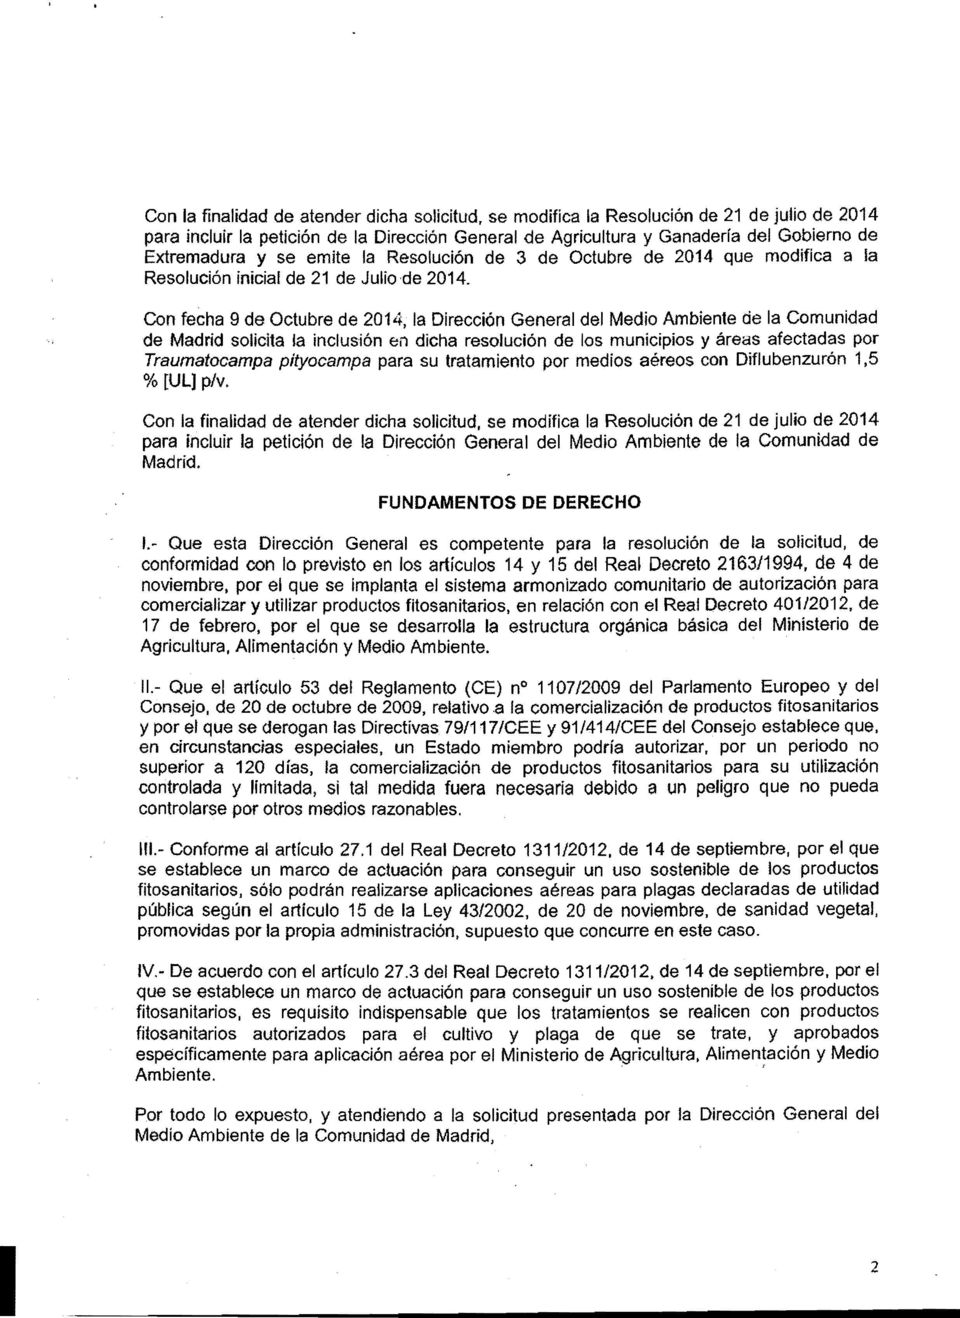 Con fecha 9 de Octubre de 2014, la Dirección General del Medio Ambiente de la Comunidad de Madrid solicita la inclusión en dicha resolución de los municipios y áreas afectadas por Traumatocampa